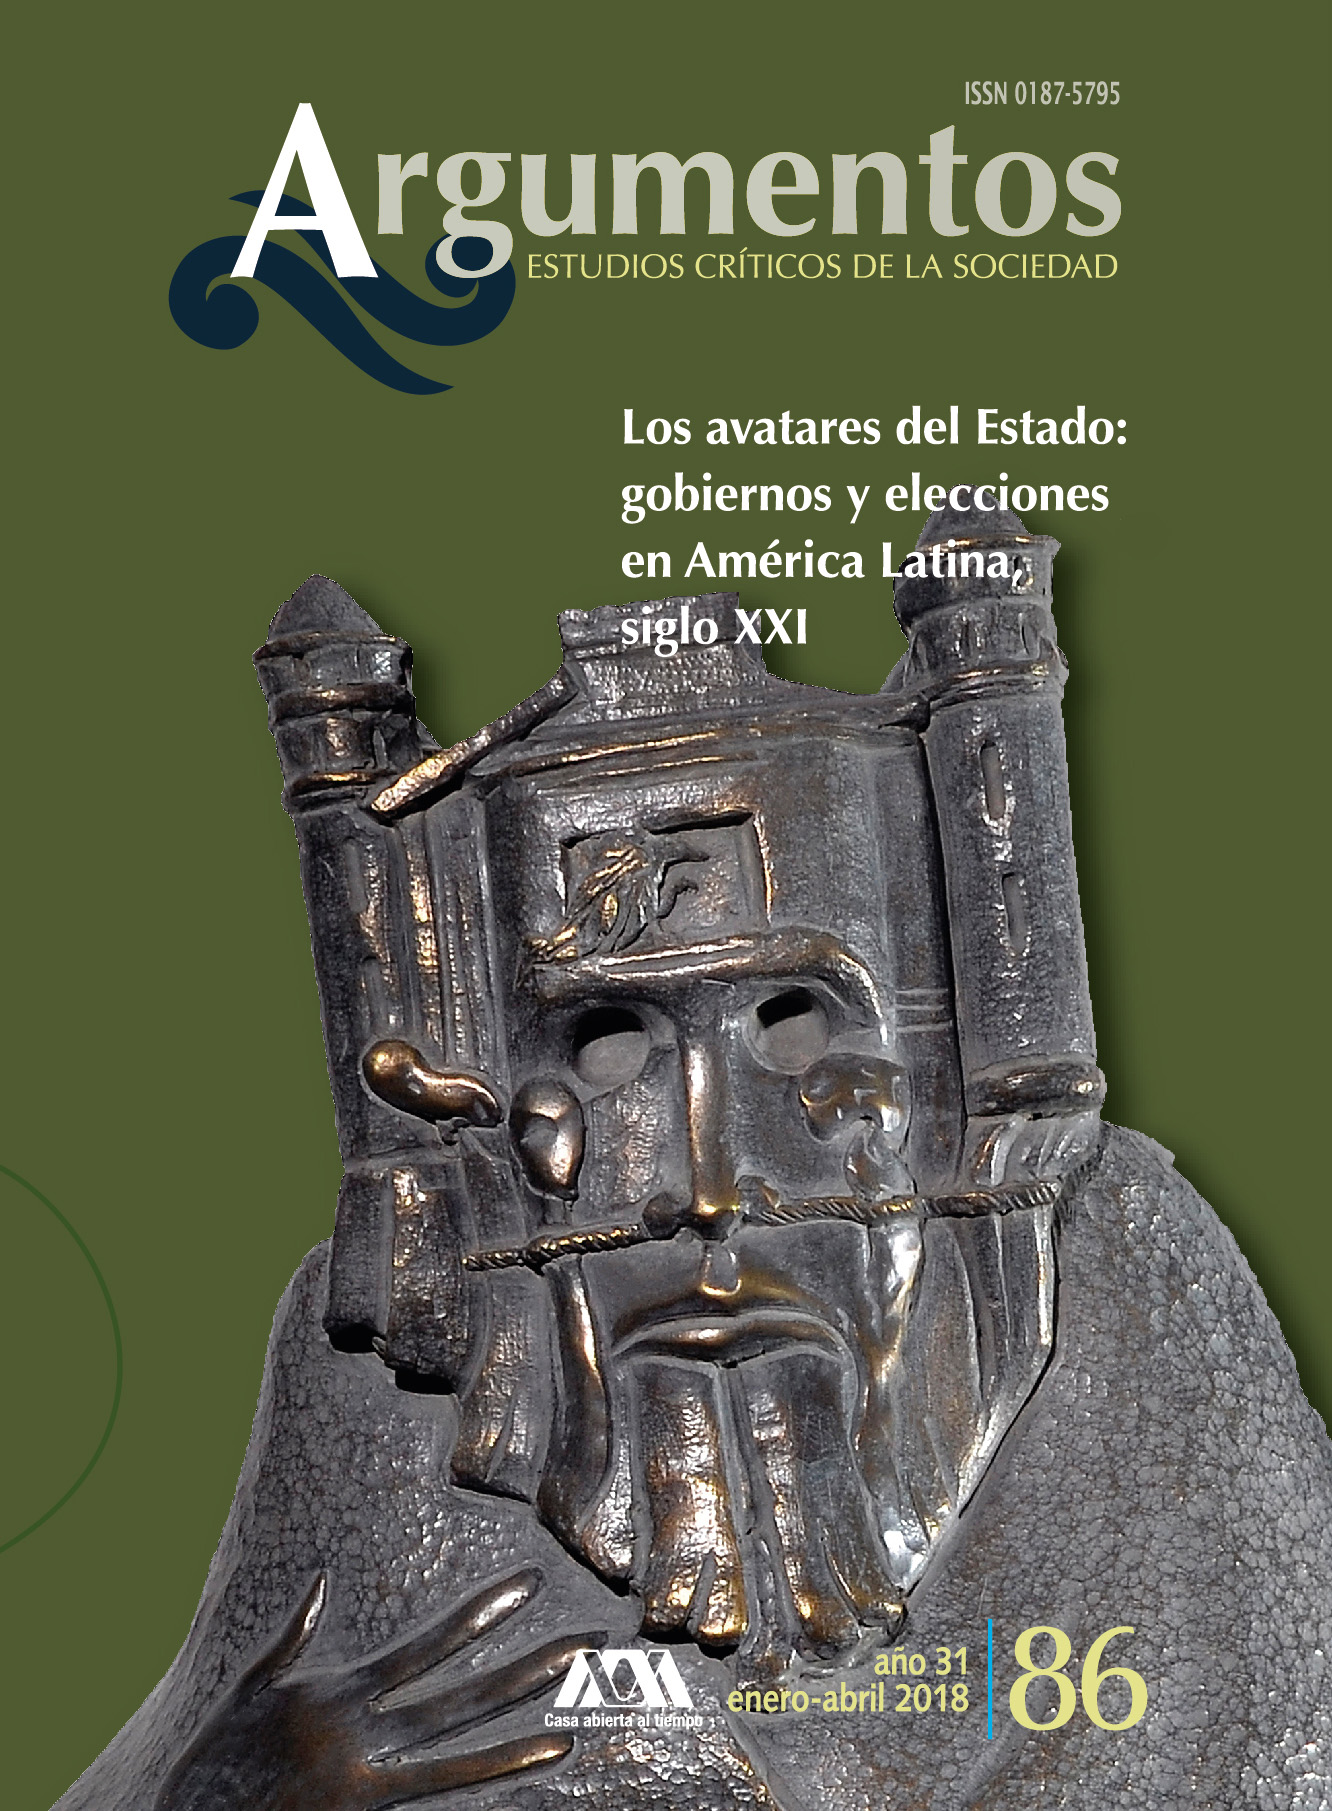 					Ver Núm. 86: "Los avatares del Estado: gobiernos y elecciones en América Latina, siglo XXI"
				